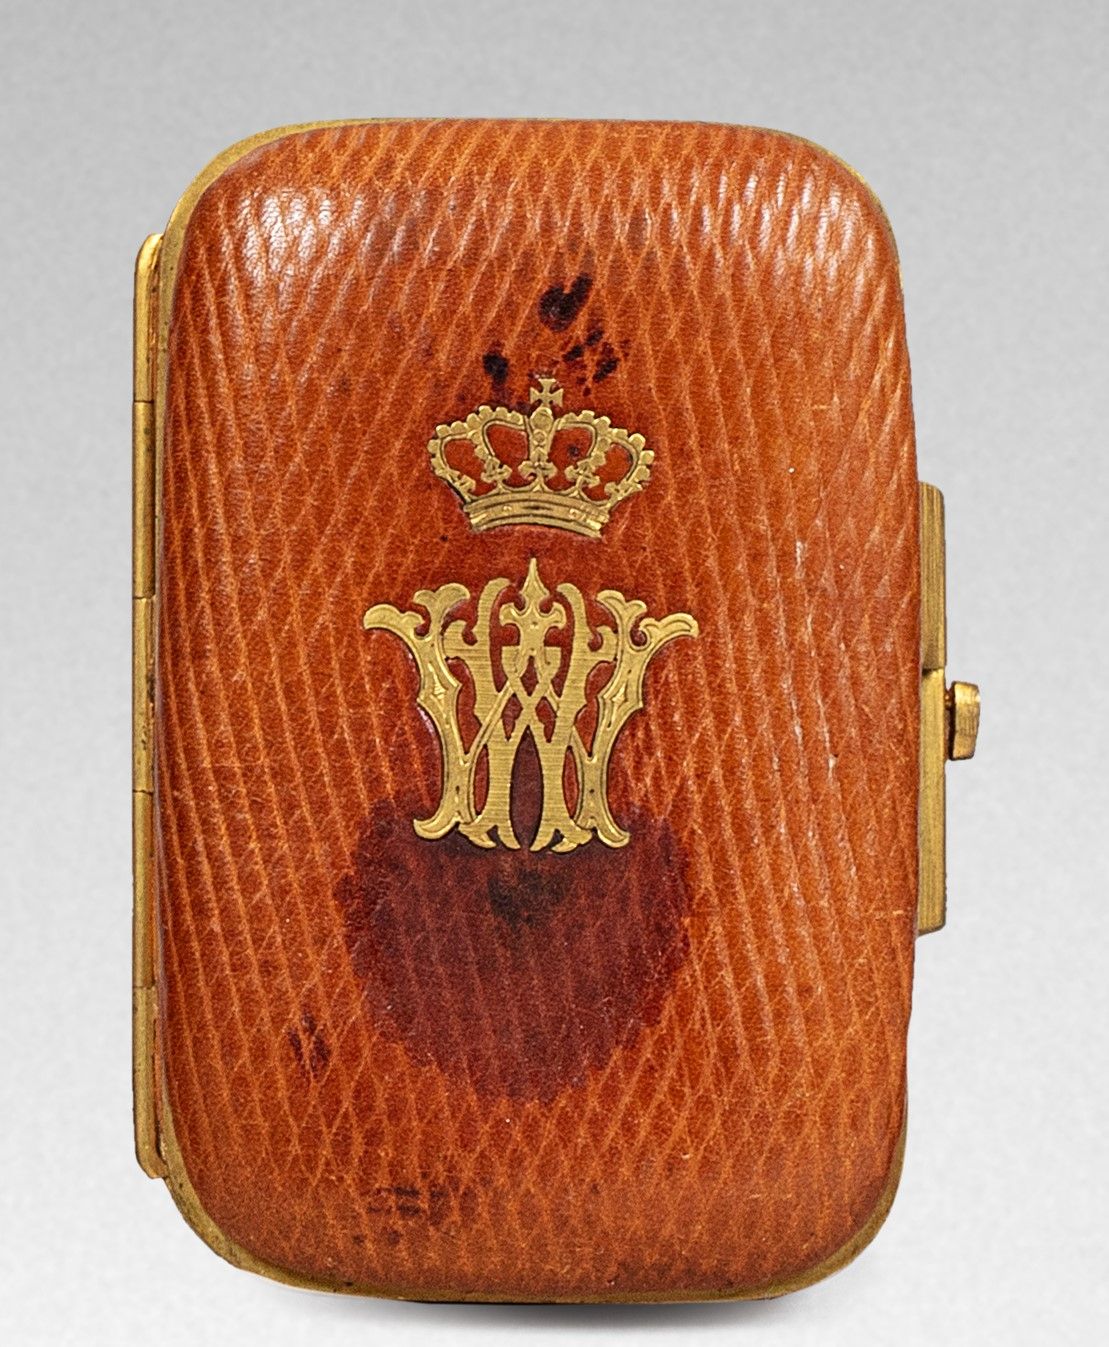 Null 持有者。

长方形，四角圆润，烟草色皮革，镀金青铜安装，中央有皇家皇冠下的 "W "字样（属于丹麦威廉王子，未来的希腊国王乔治一世（1845-1913&hellip;